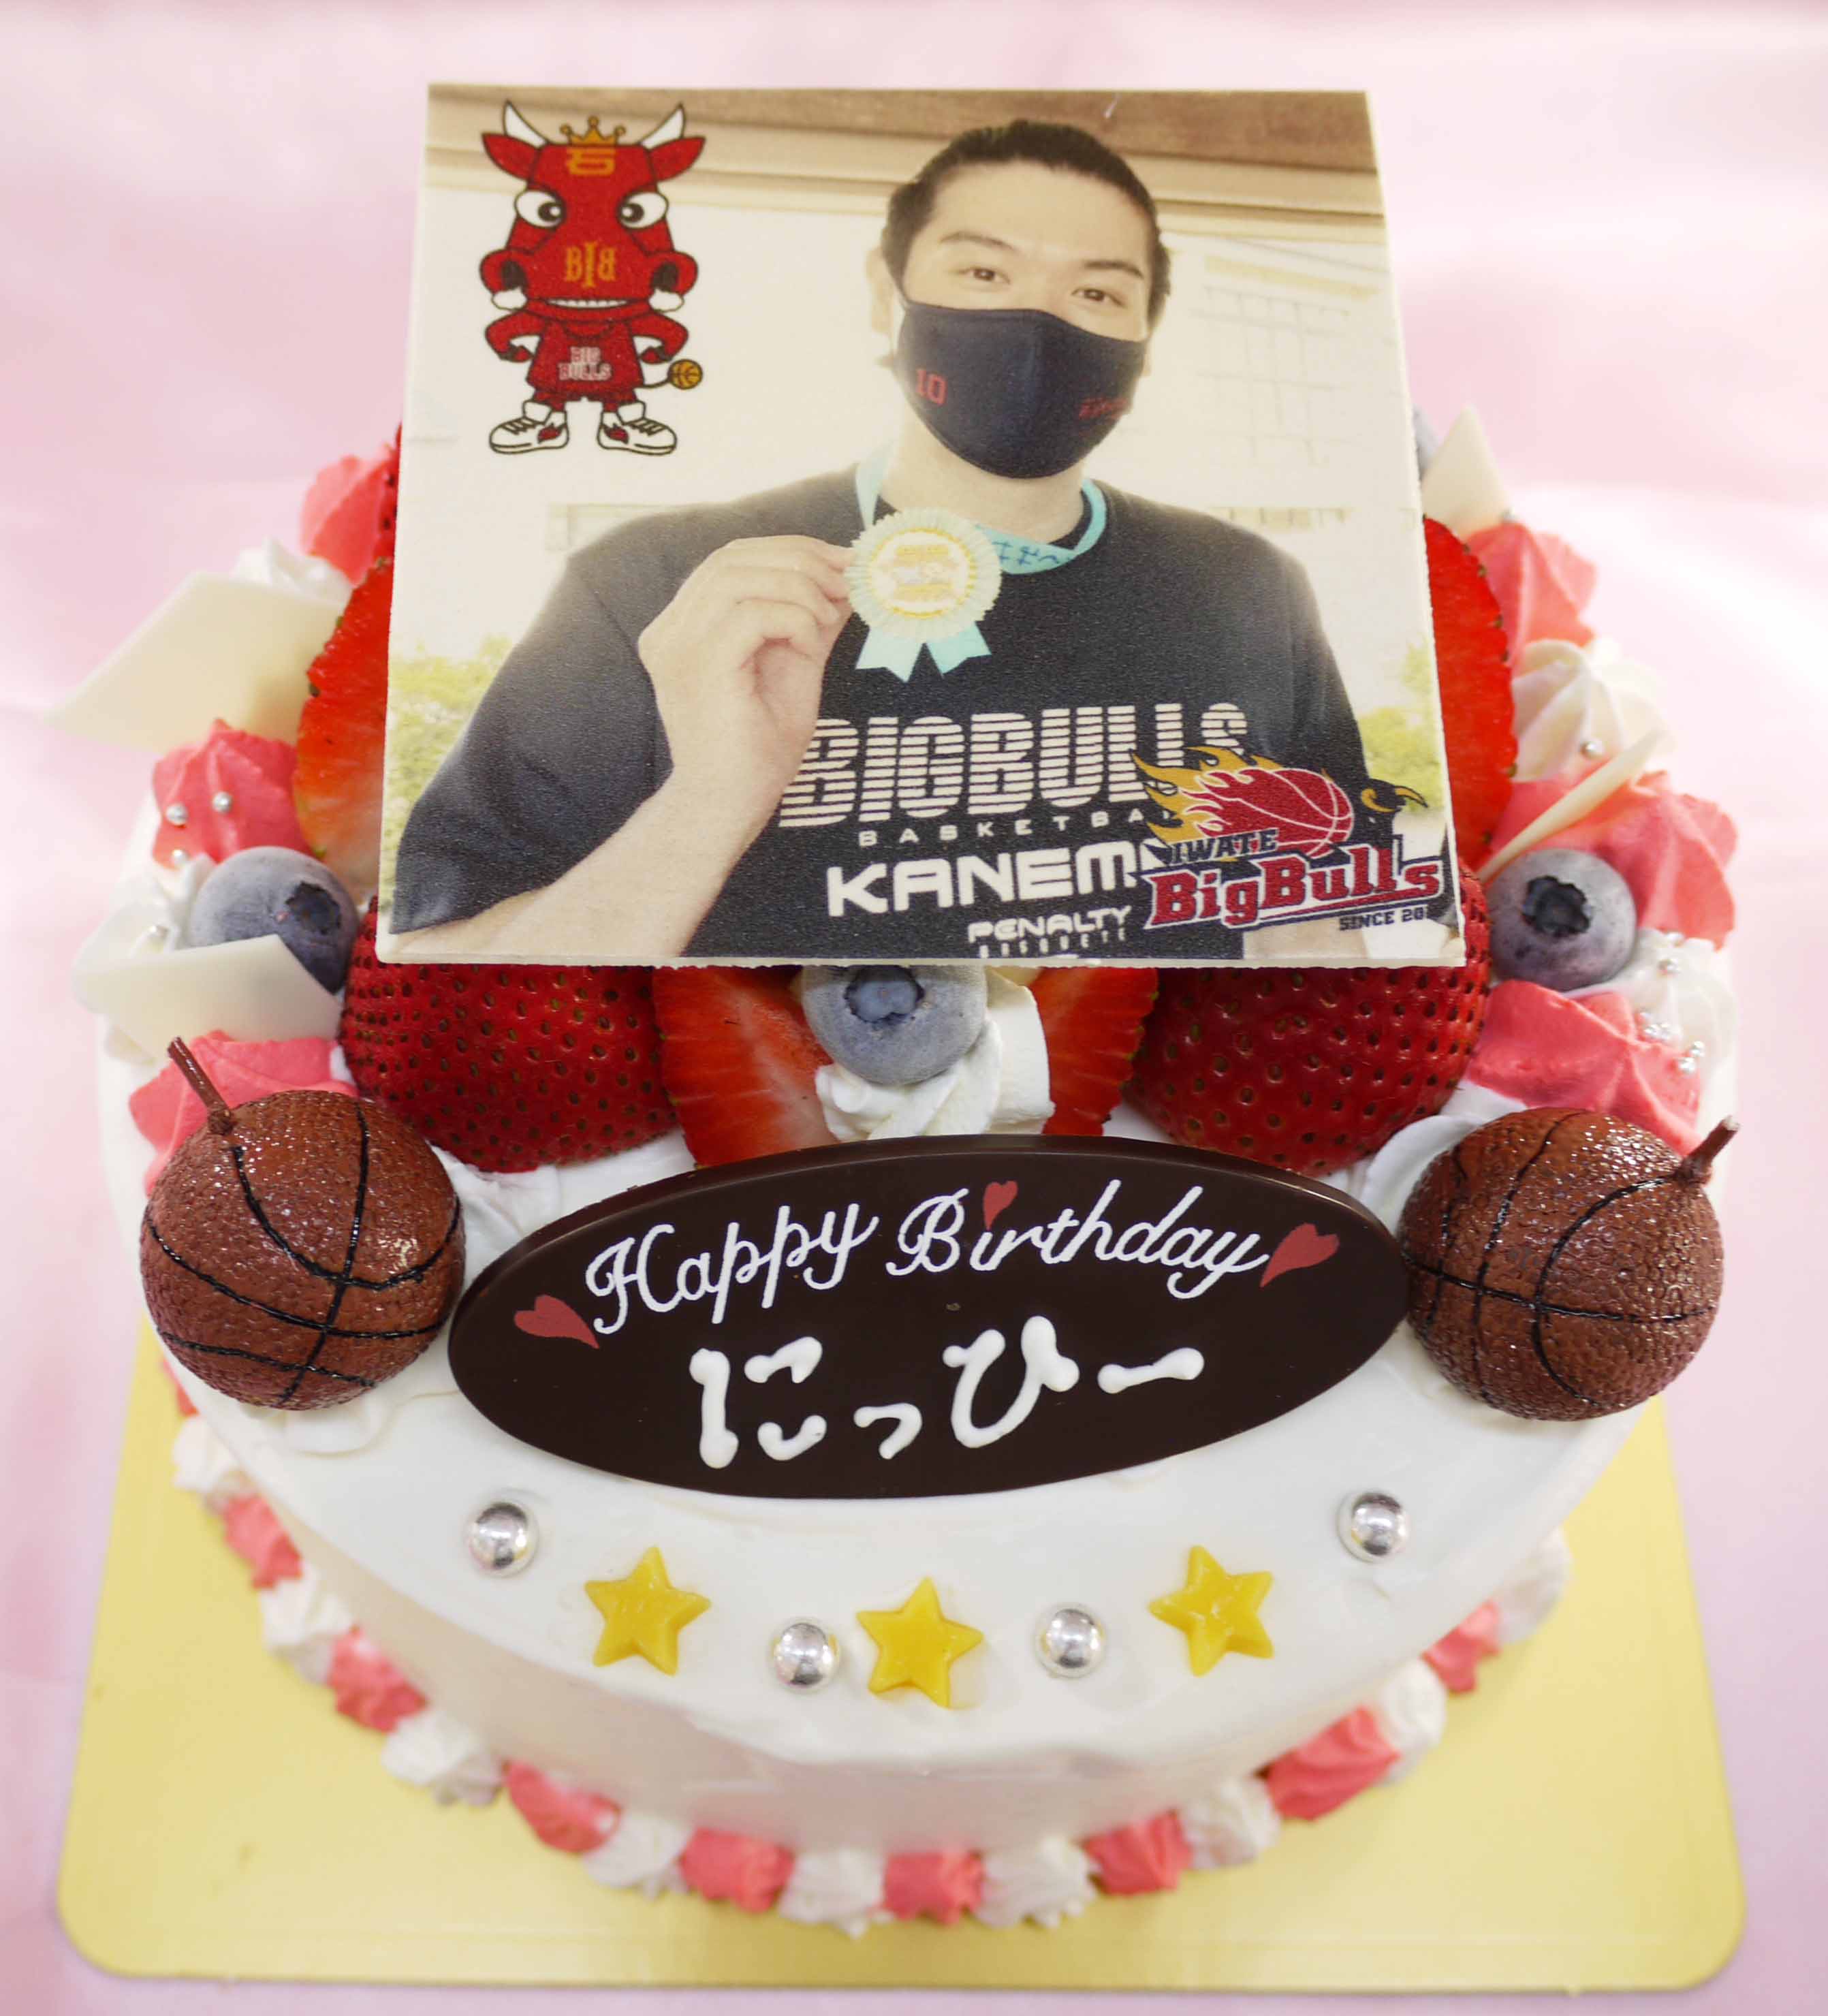 岩手ビッグブルズ仁平拓海選手の誕生日ケーキ